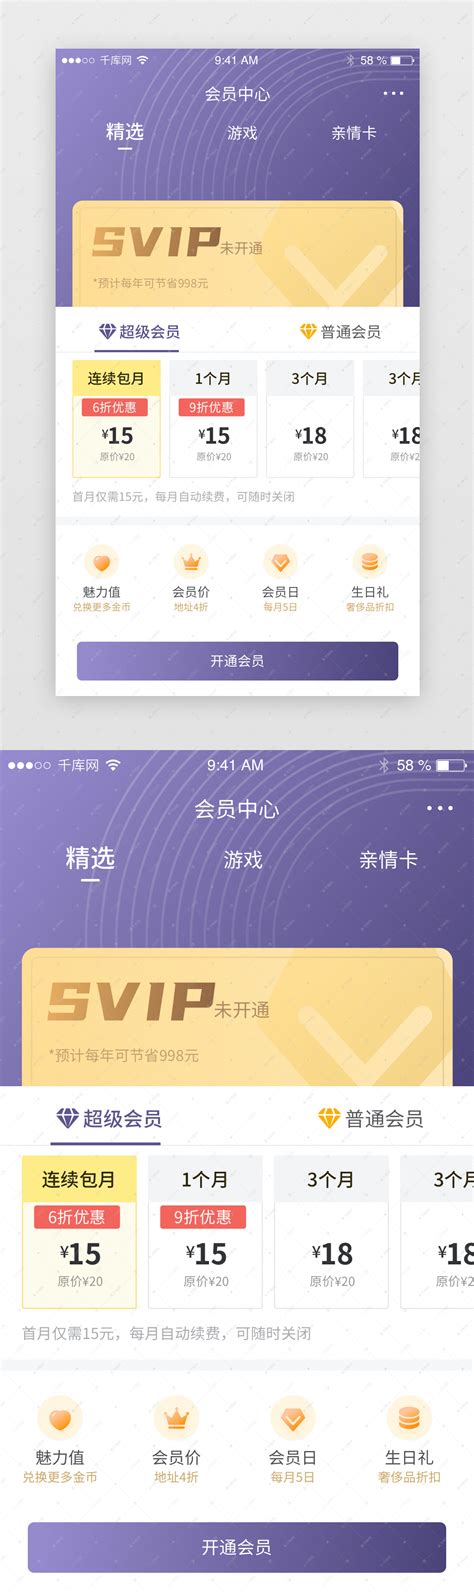 小成VIP影视app图片预览_绿色资源网